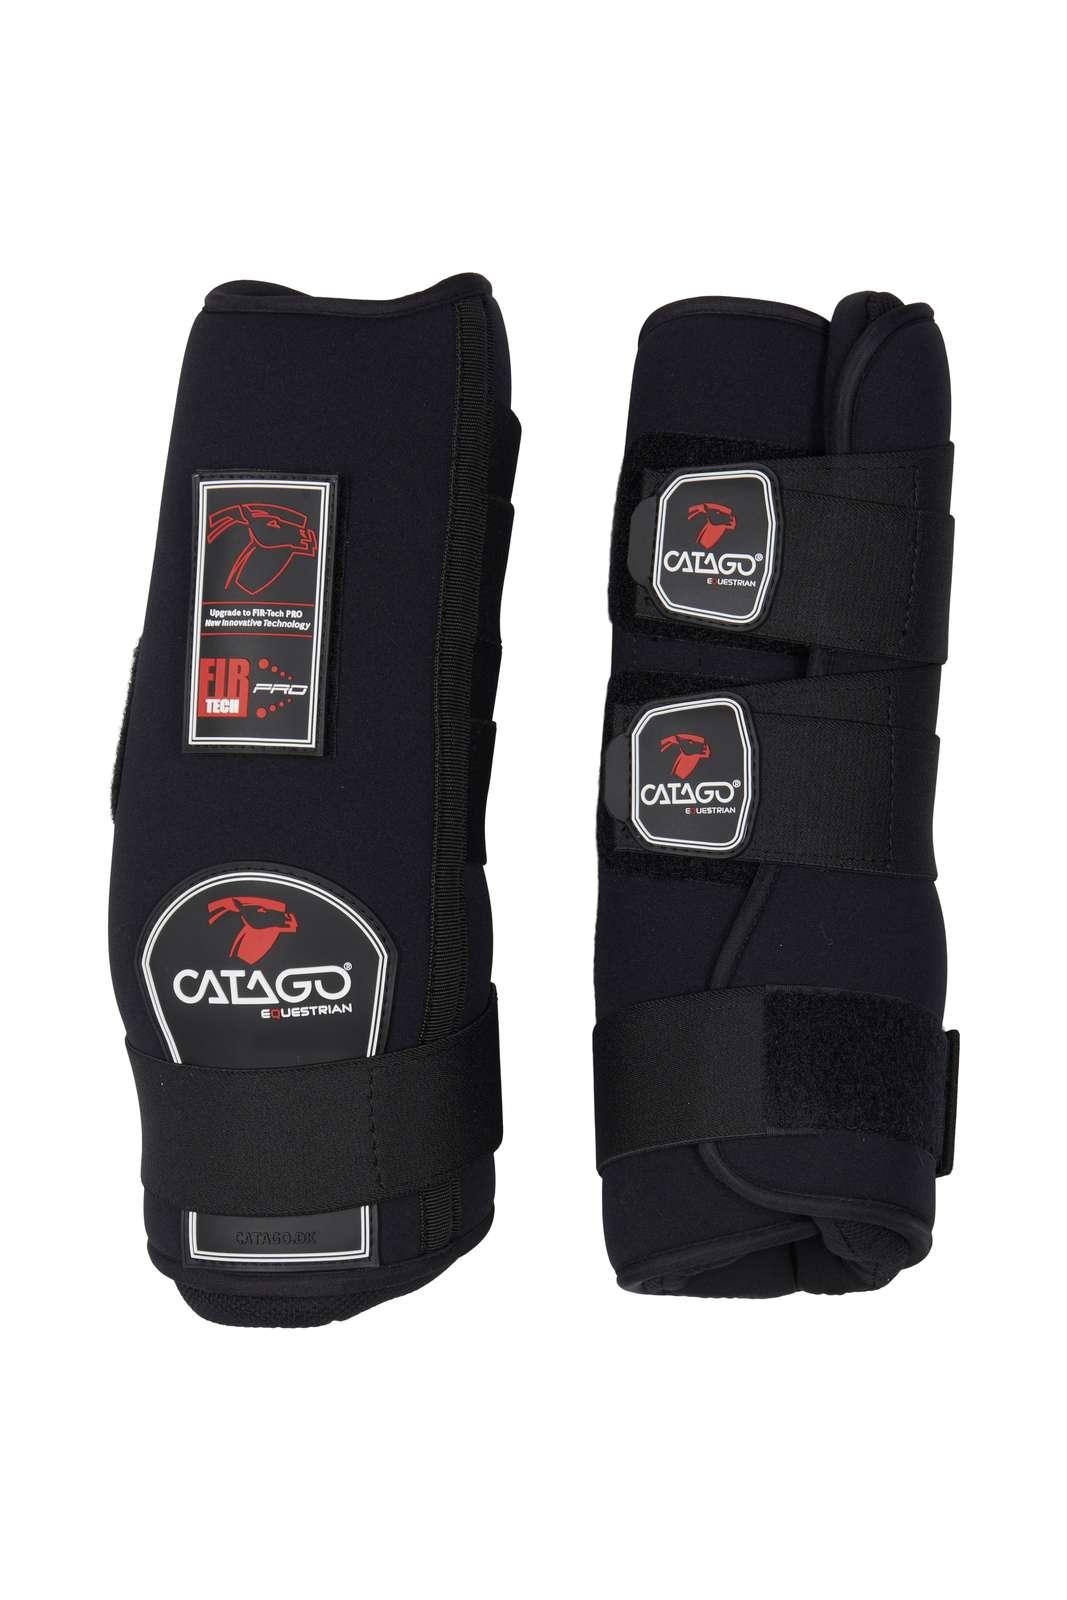 Catago Fir Tech Healing Stable Boots